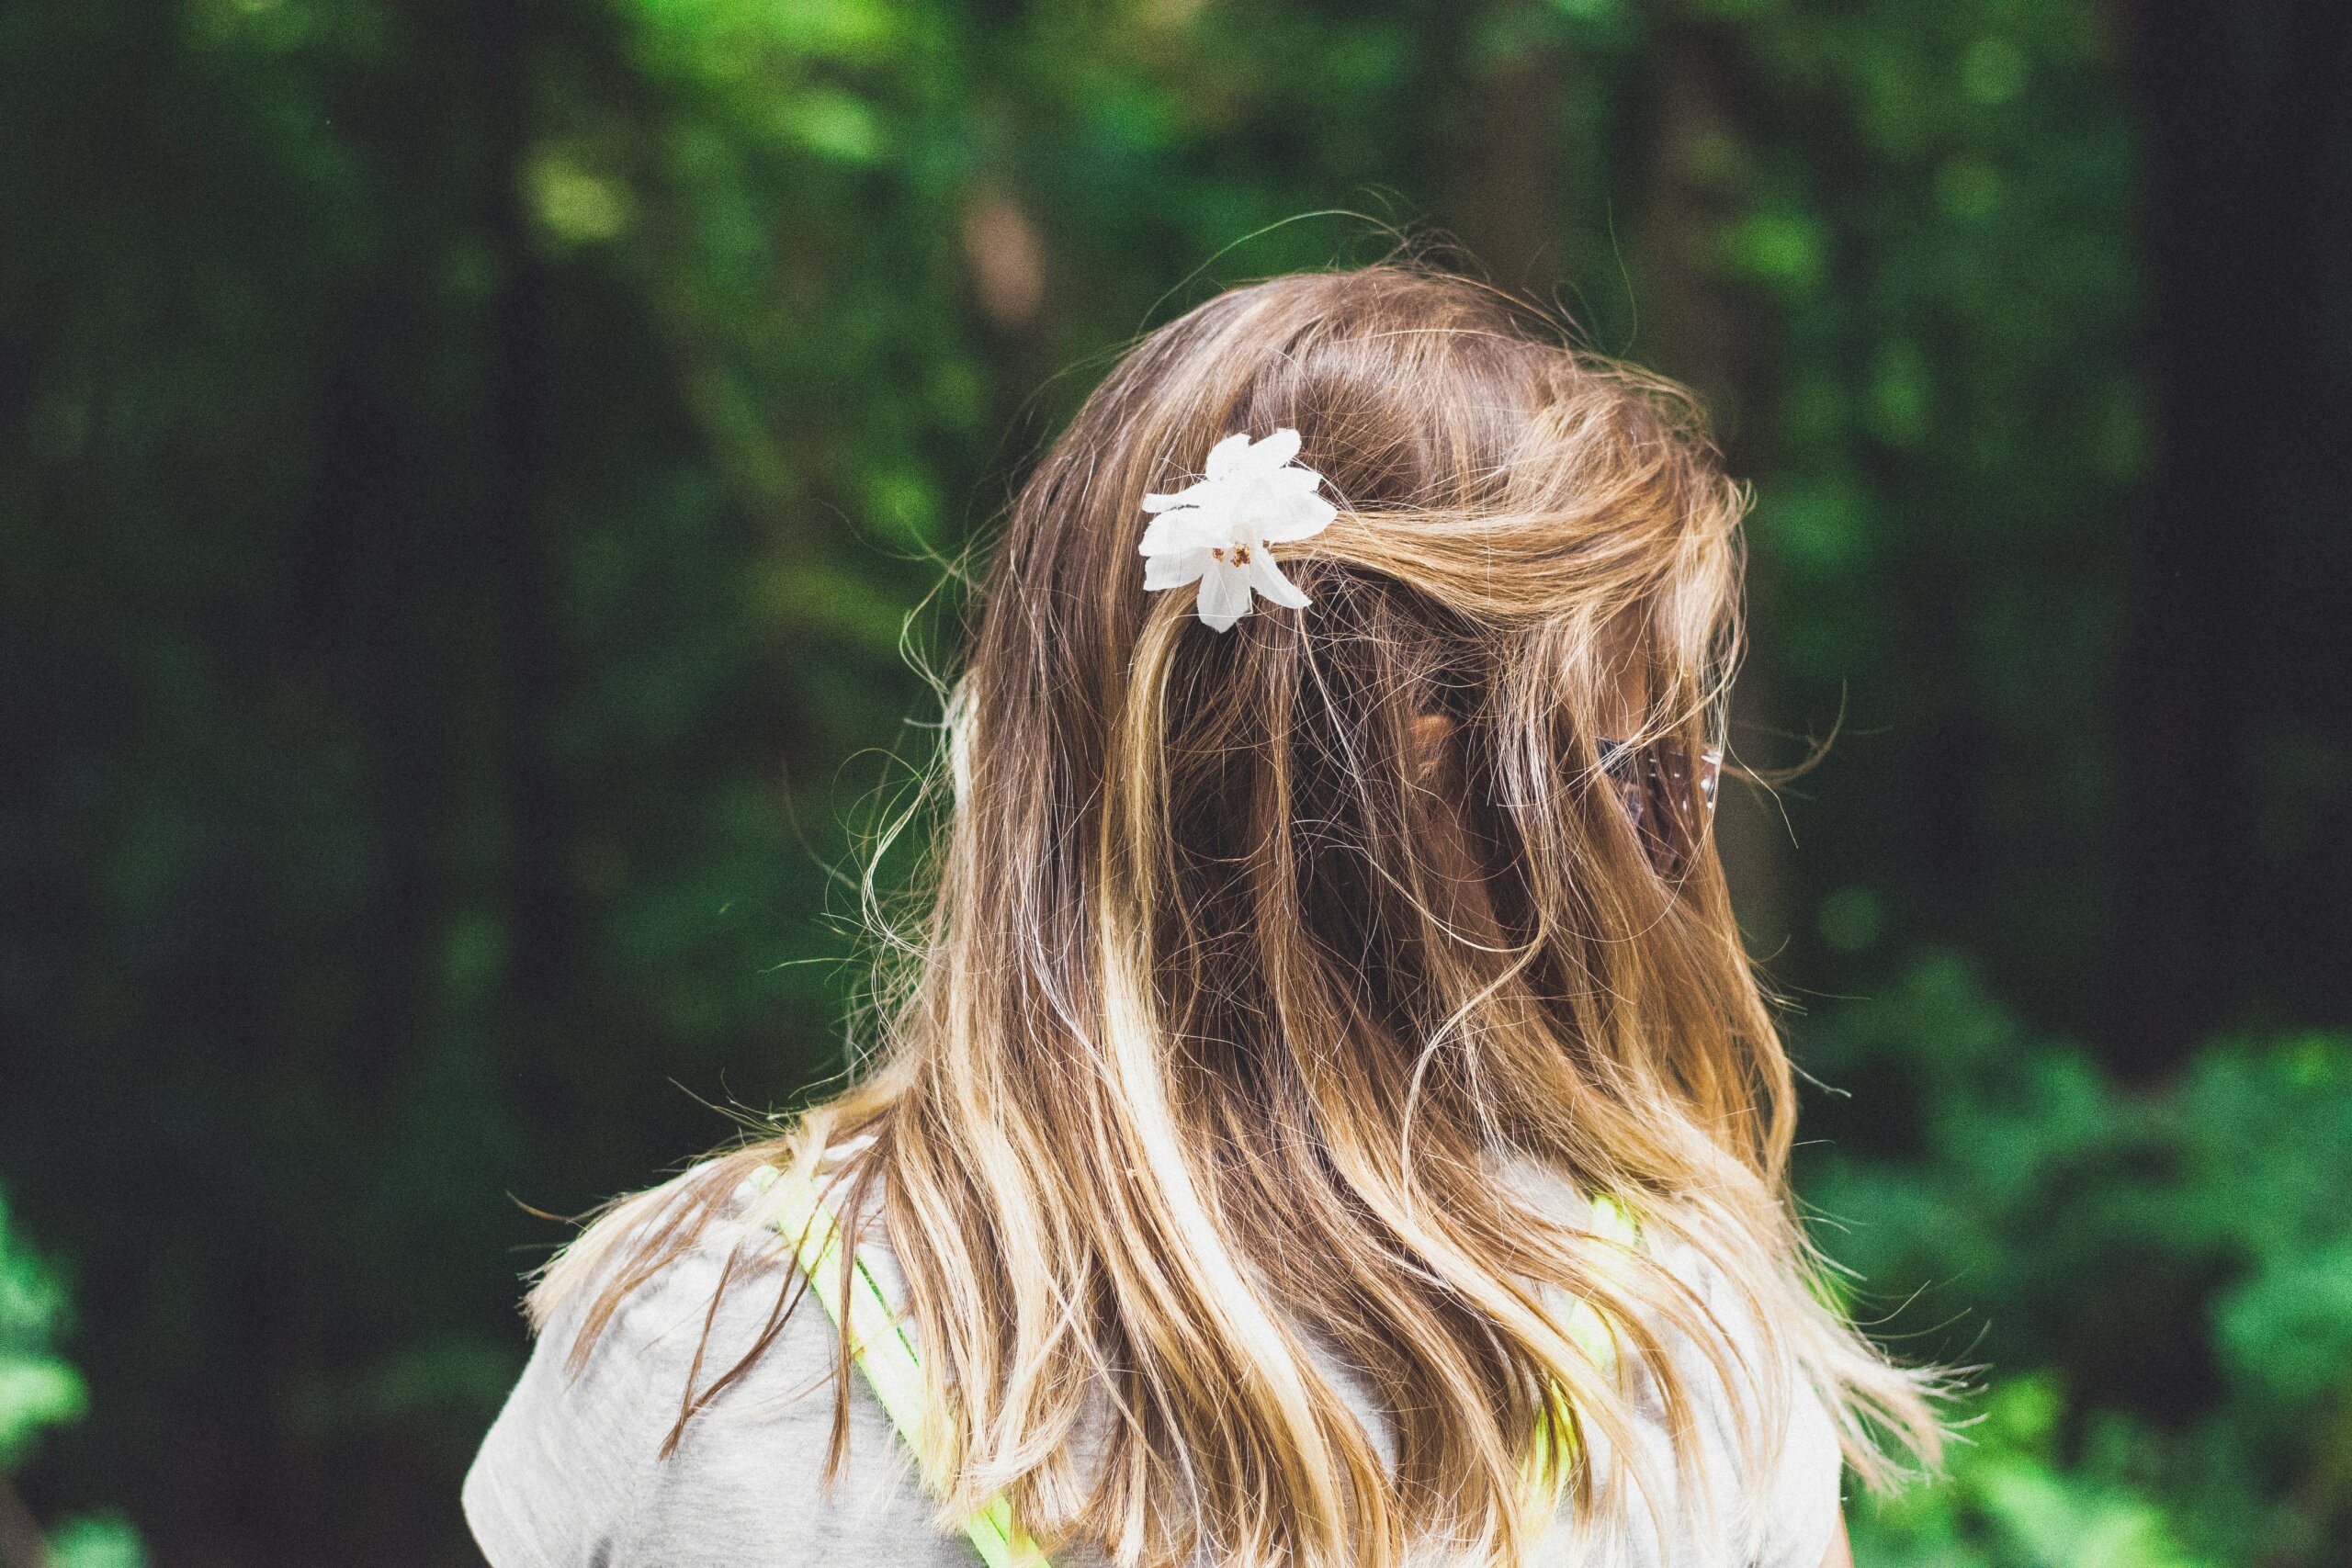 Bijeli cvijet u plavoj kosi djevojčice u prirodi.